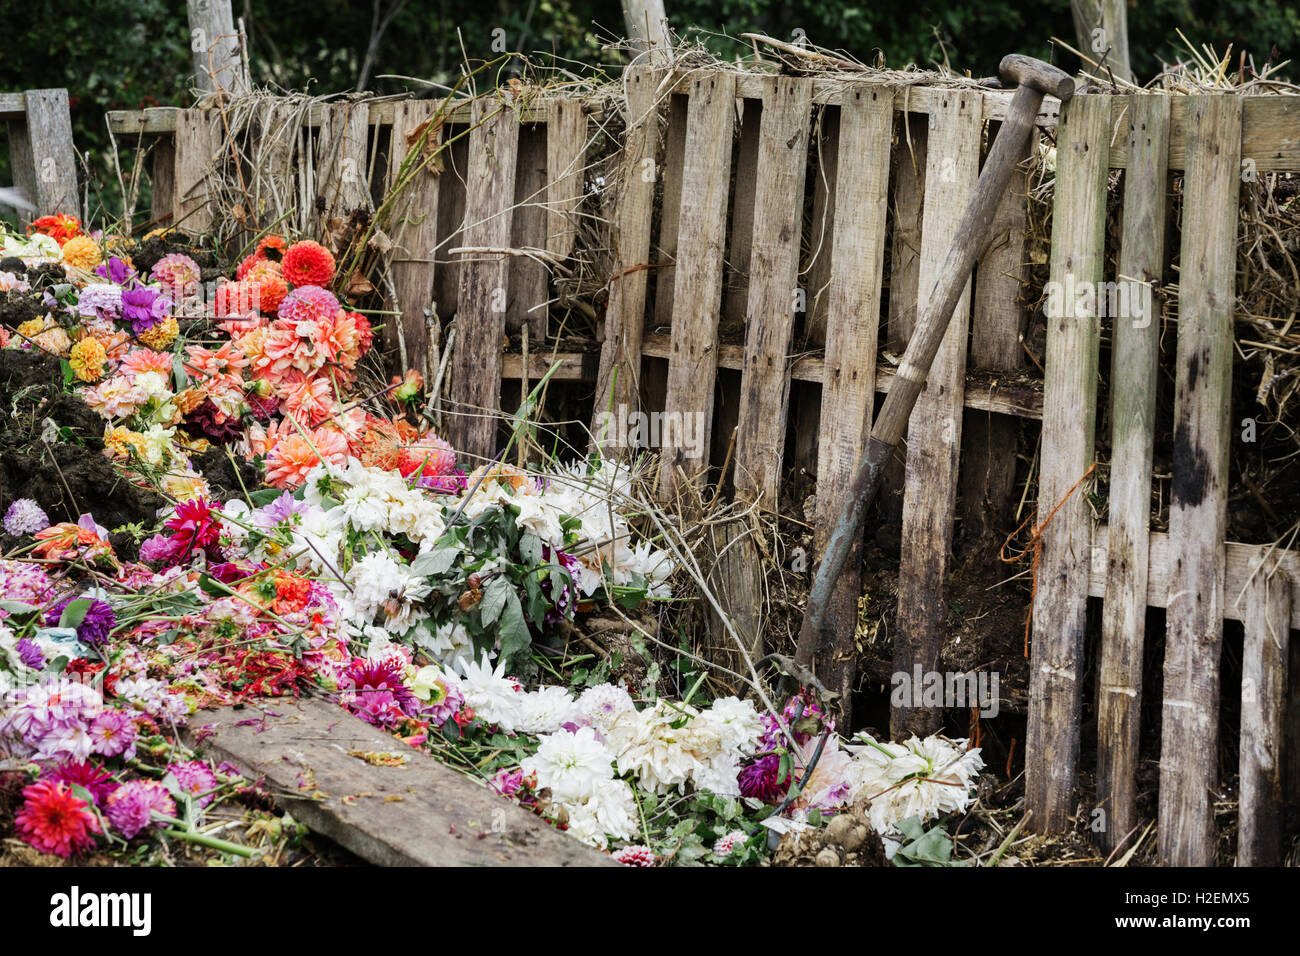 Un composteur faite de vieilles palettes en bois, avec les fleurs mortes, déchets de jardin et de terre. Banque D'Images